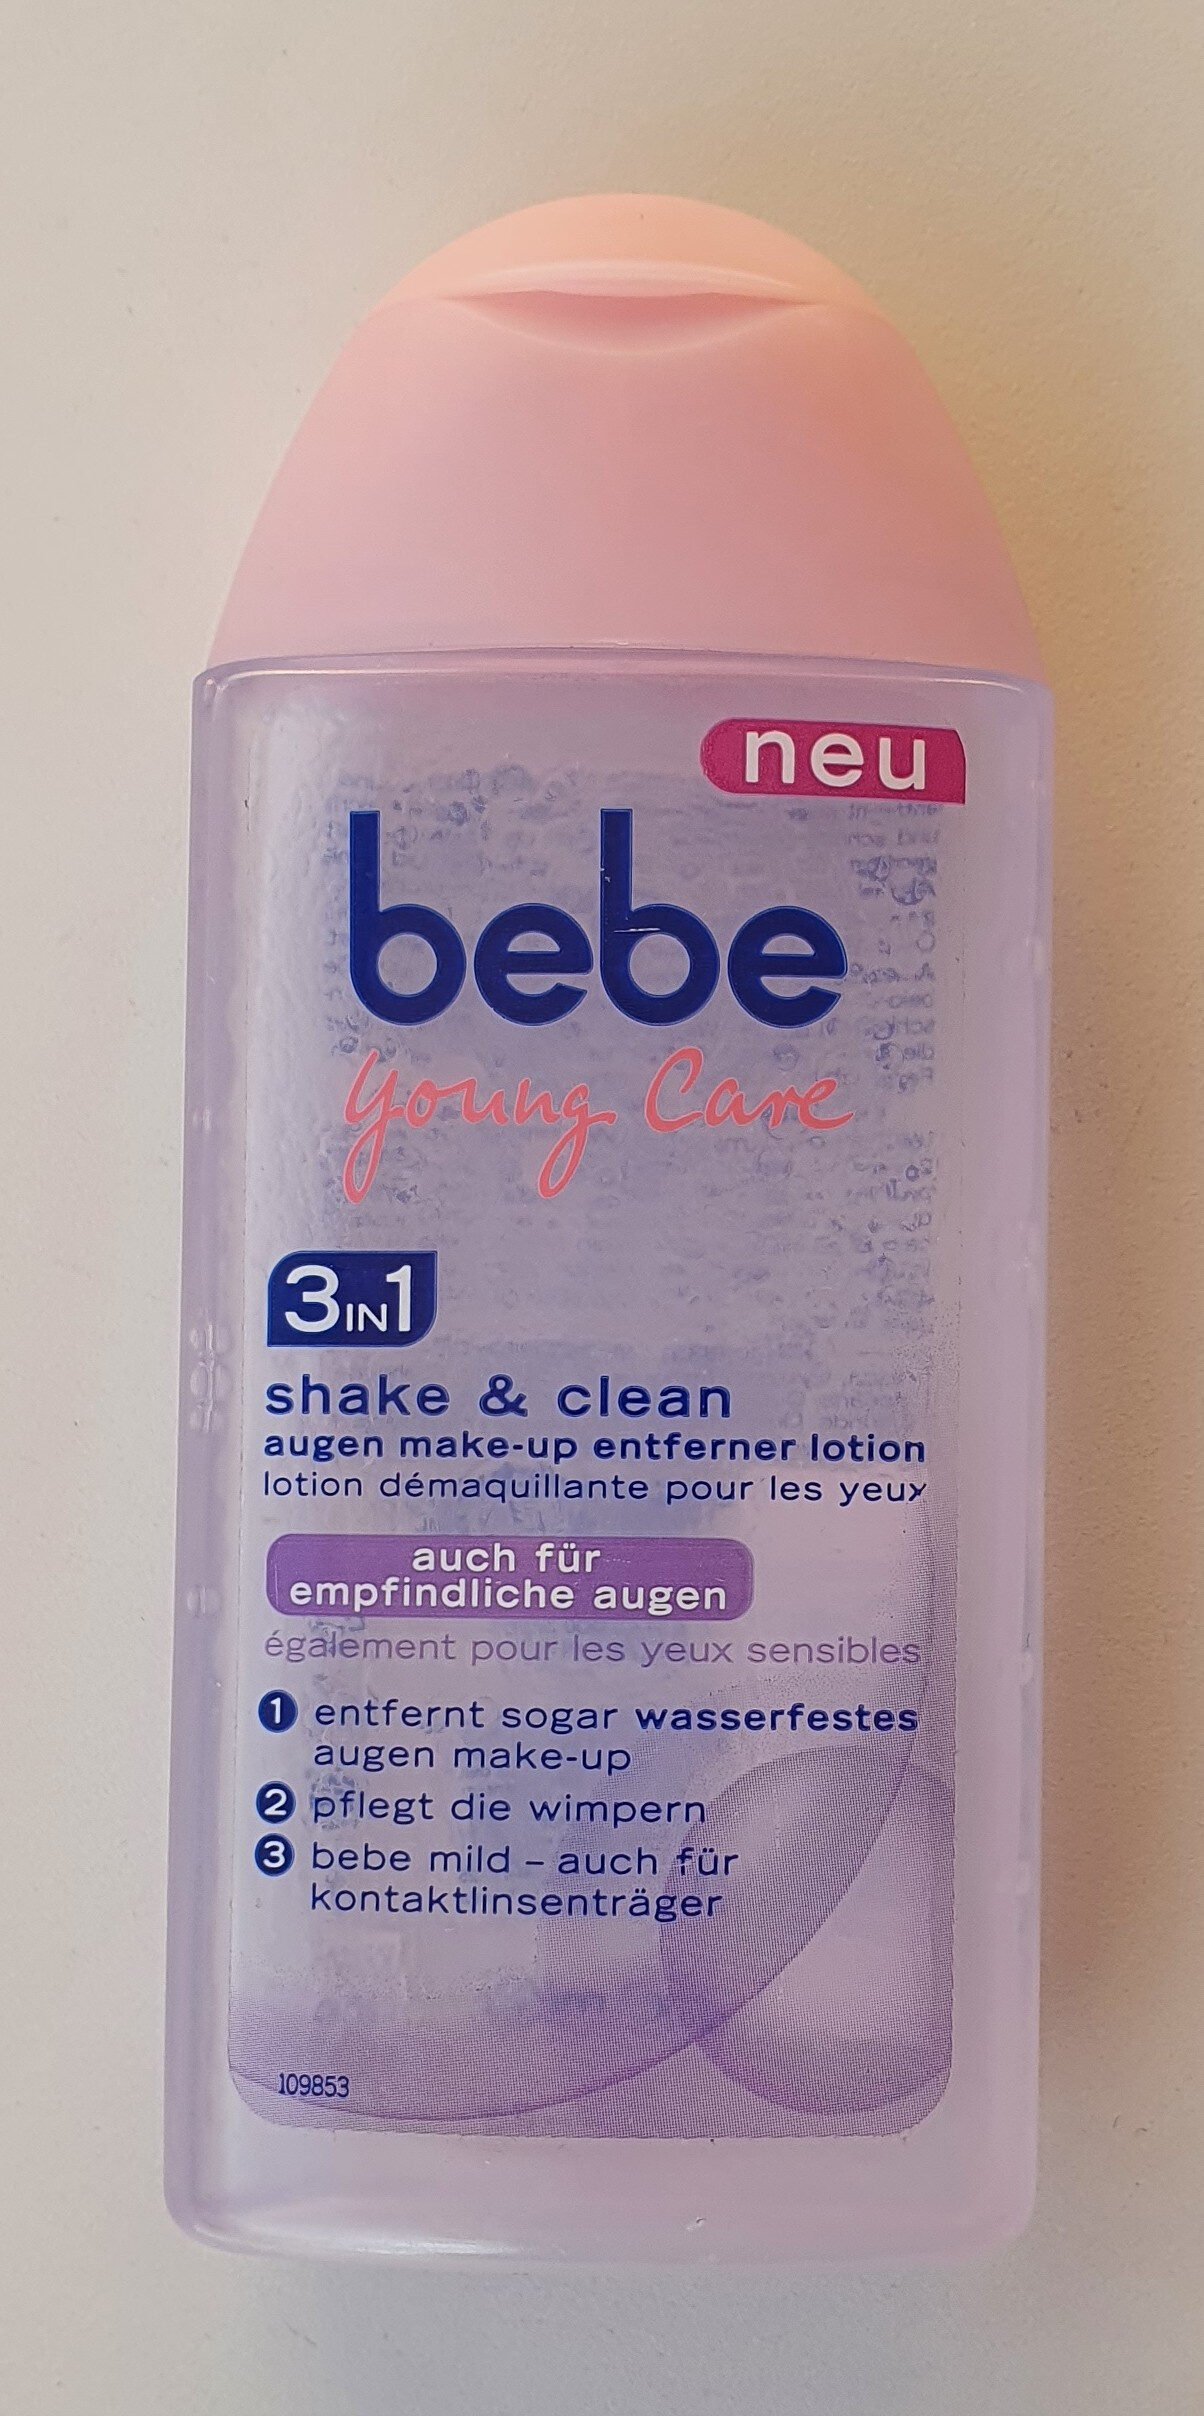 3in1 shake and clean augen make-up entferner lotion - Produkt - de